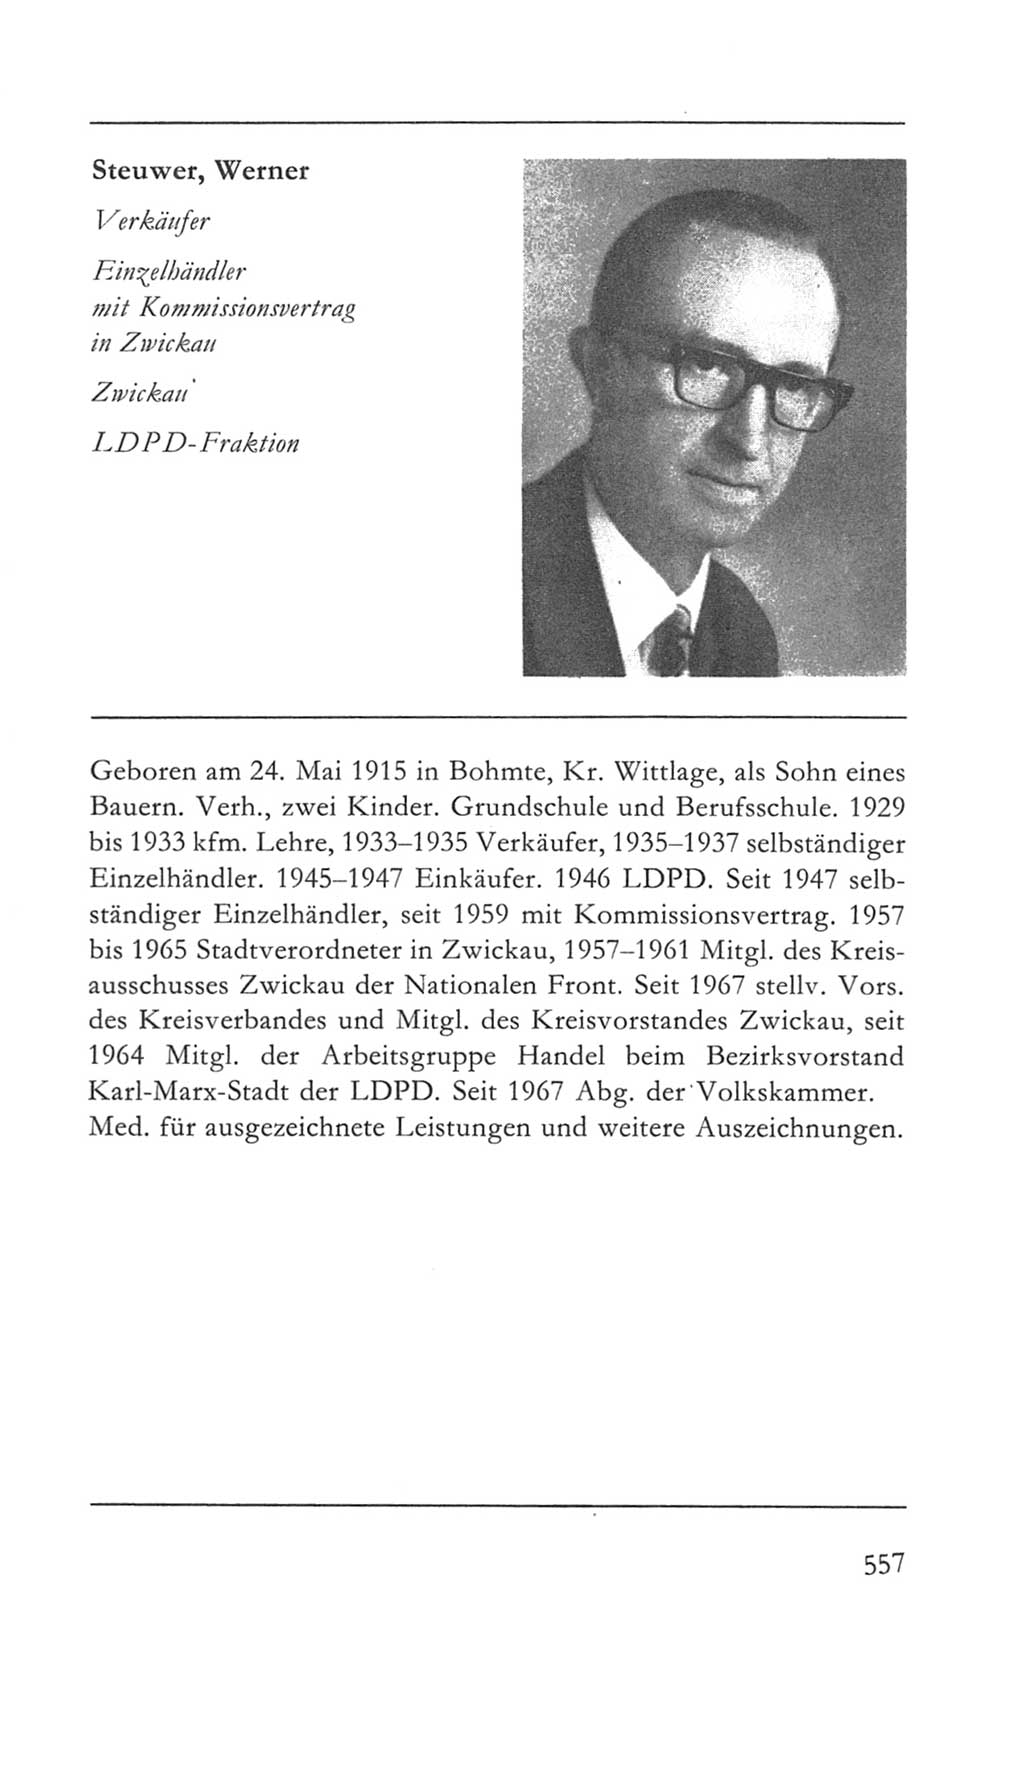 Volkskammer (VK) der Deutschen Demokratischen Republik (DDR) 5. Wahlperiode 1967-1971, Seite 557 (VK. DDR 5. WP. 1967-1971, S. 557)